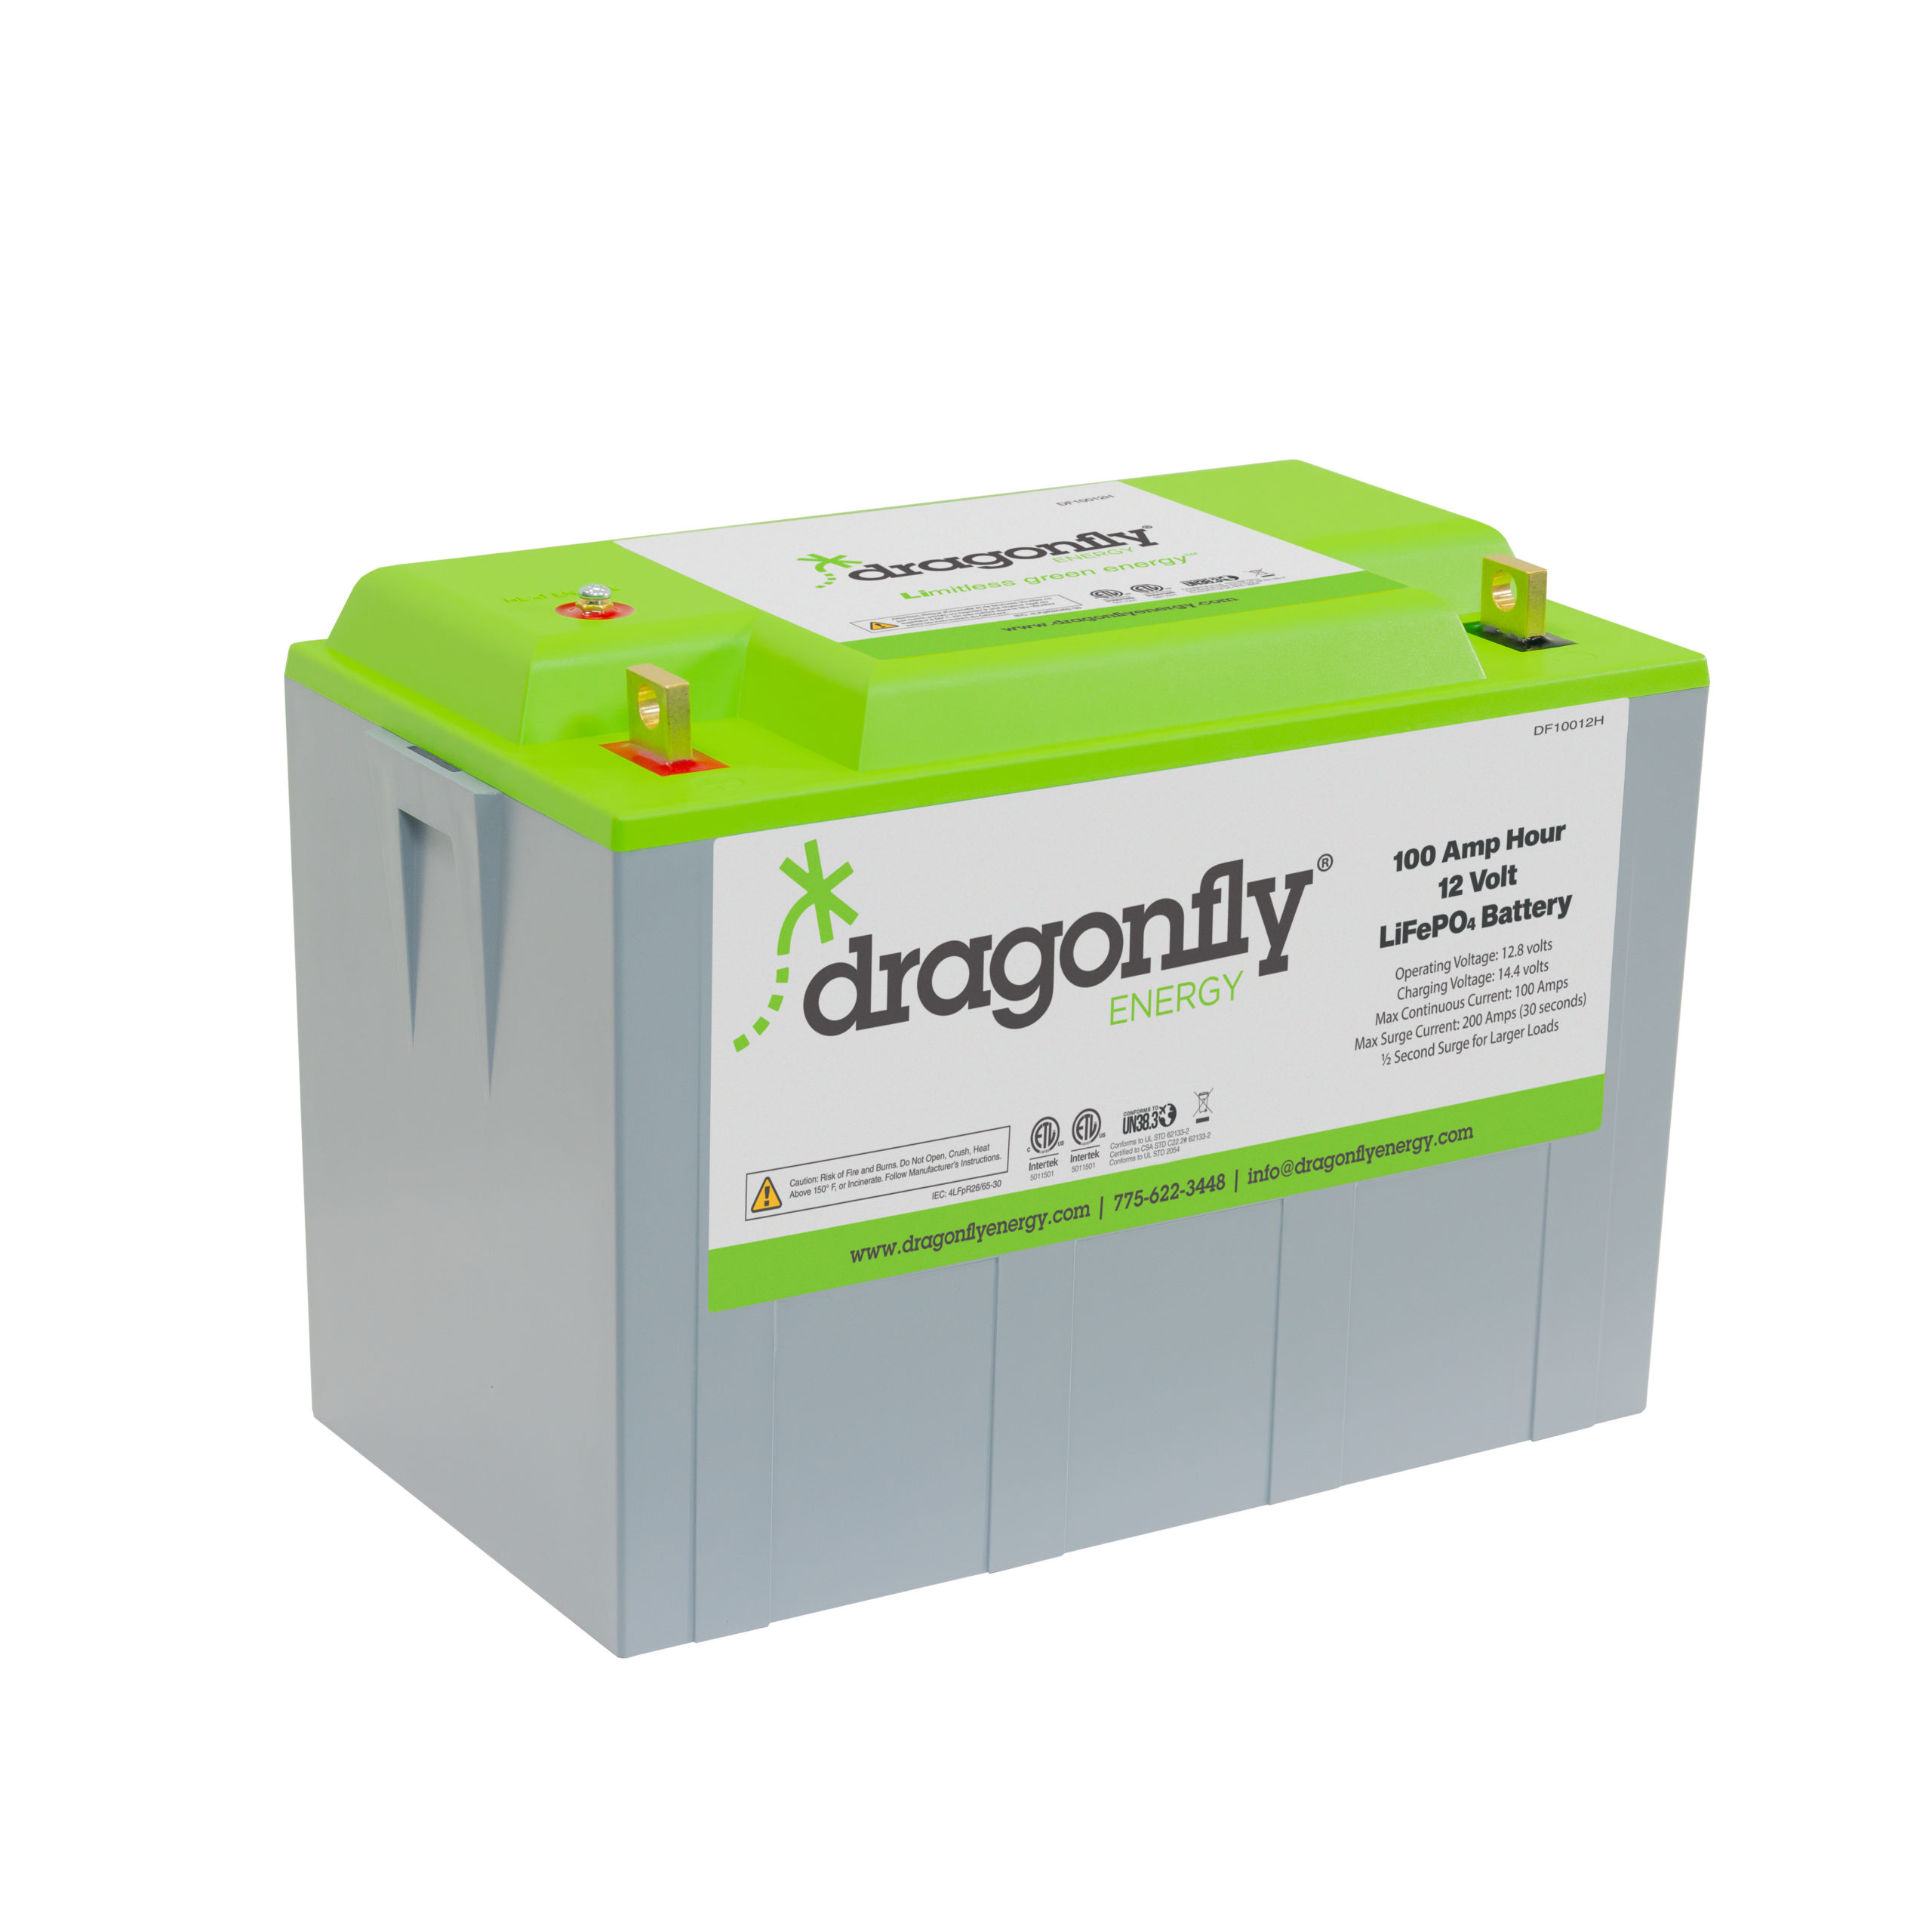 Broederschap struik veelbelovend 100Ah 12V Heated LiFePO4 Battery | Dragonfly Energy